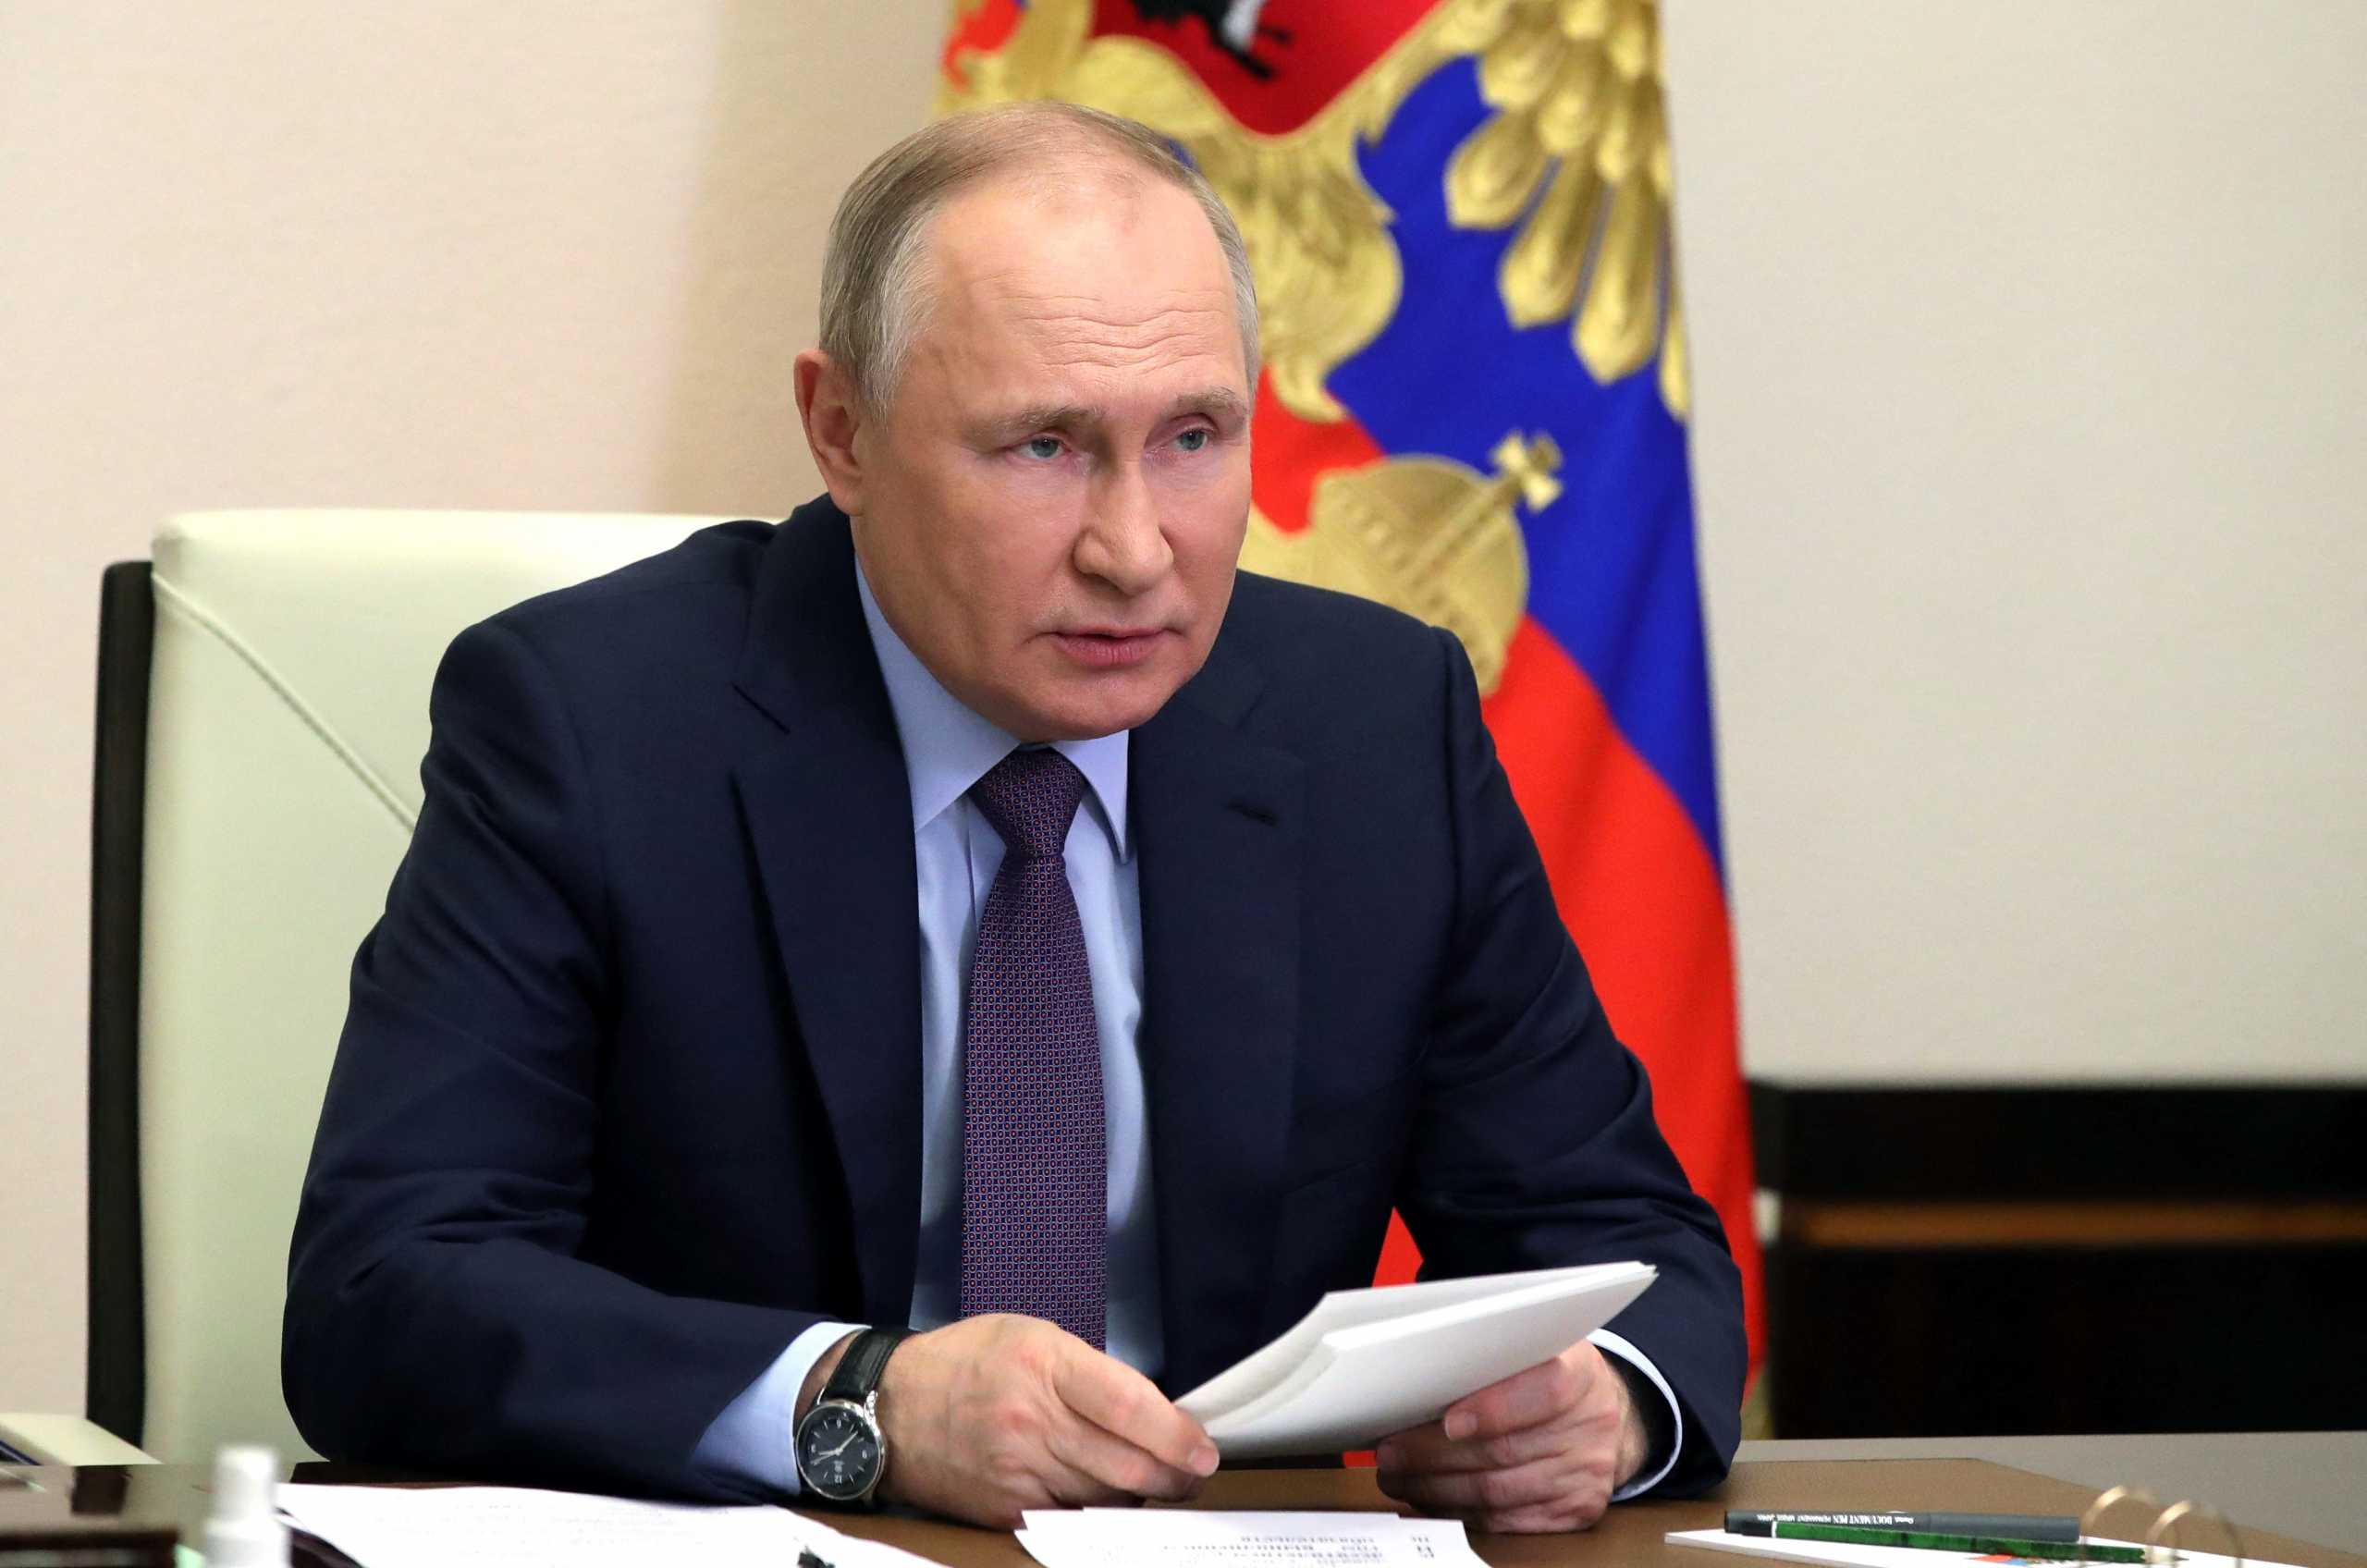 Πούτιν: Η Ρωσία θα ανακατευθύνει το φυσικό αέριο προς ανατολάς